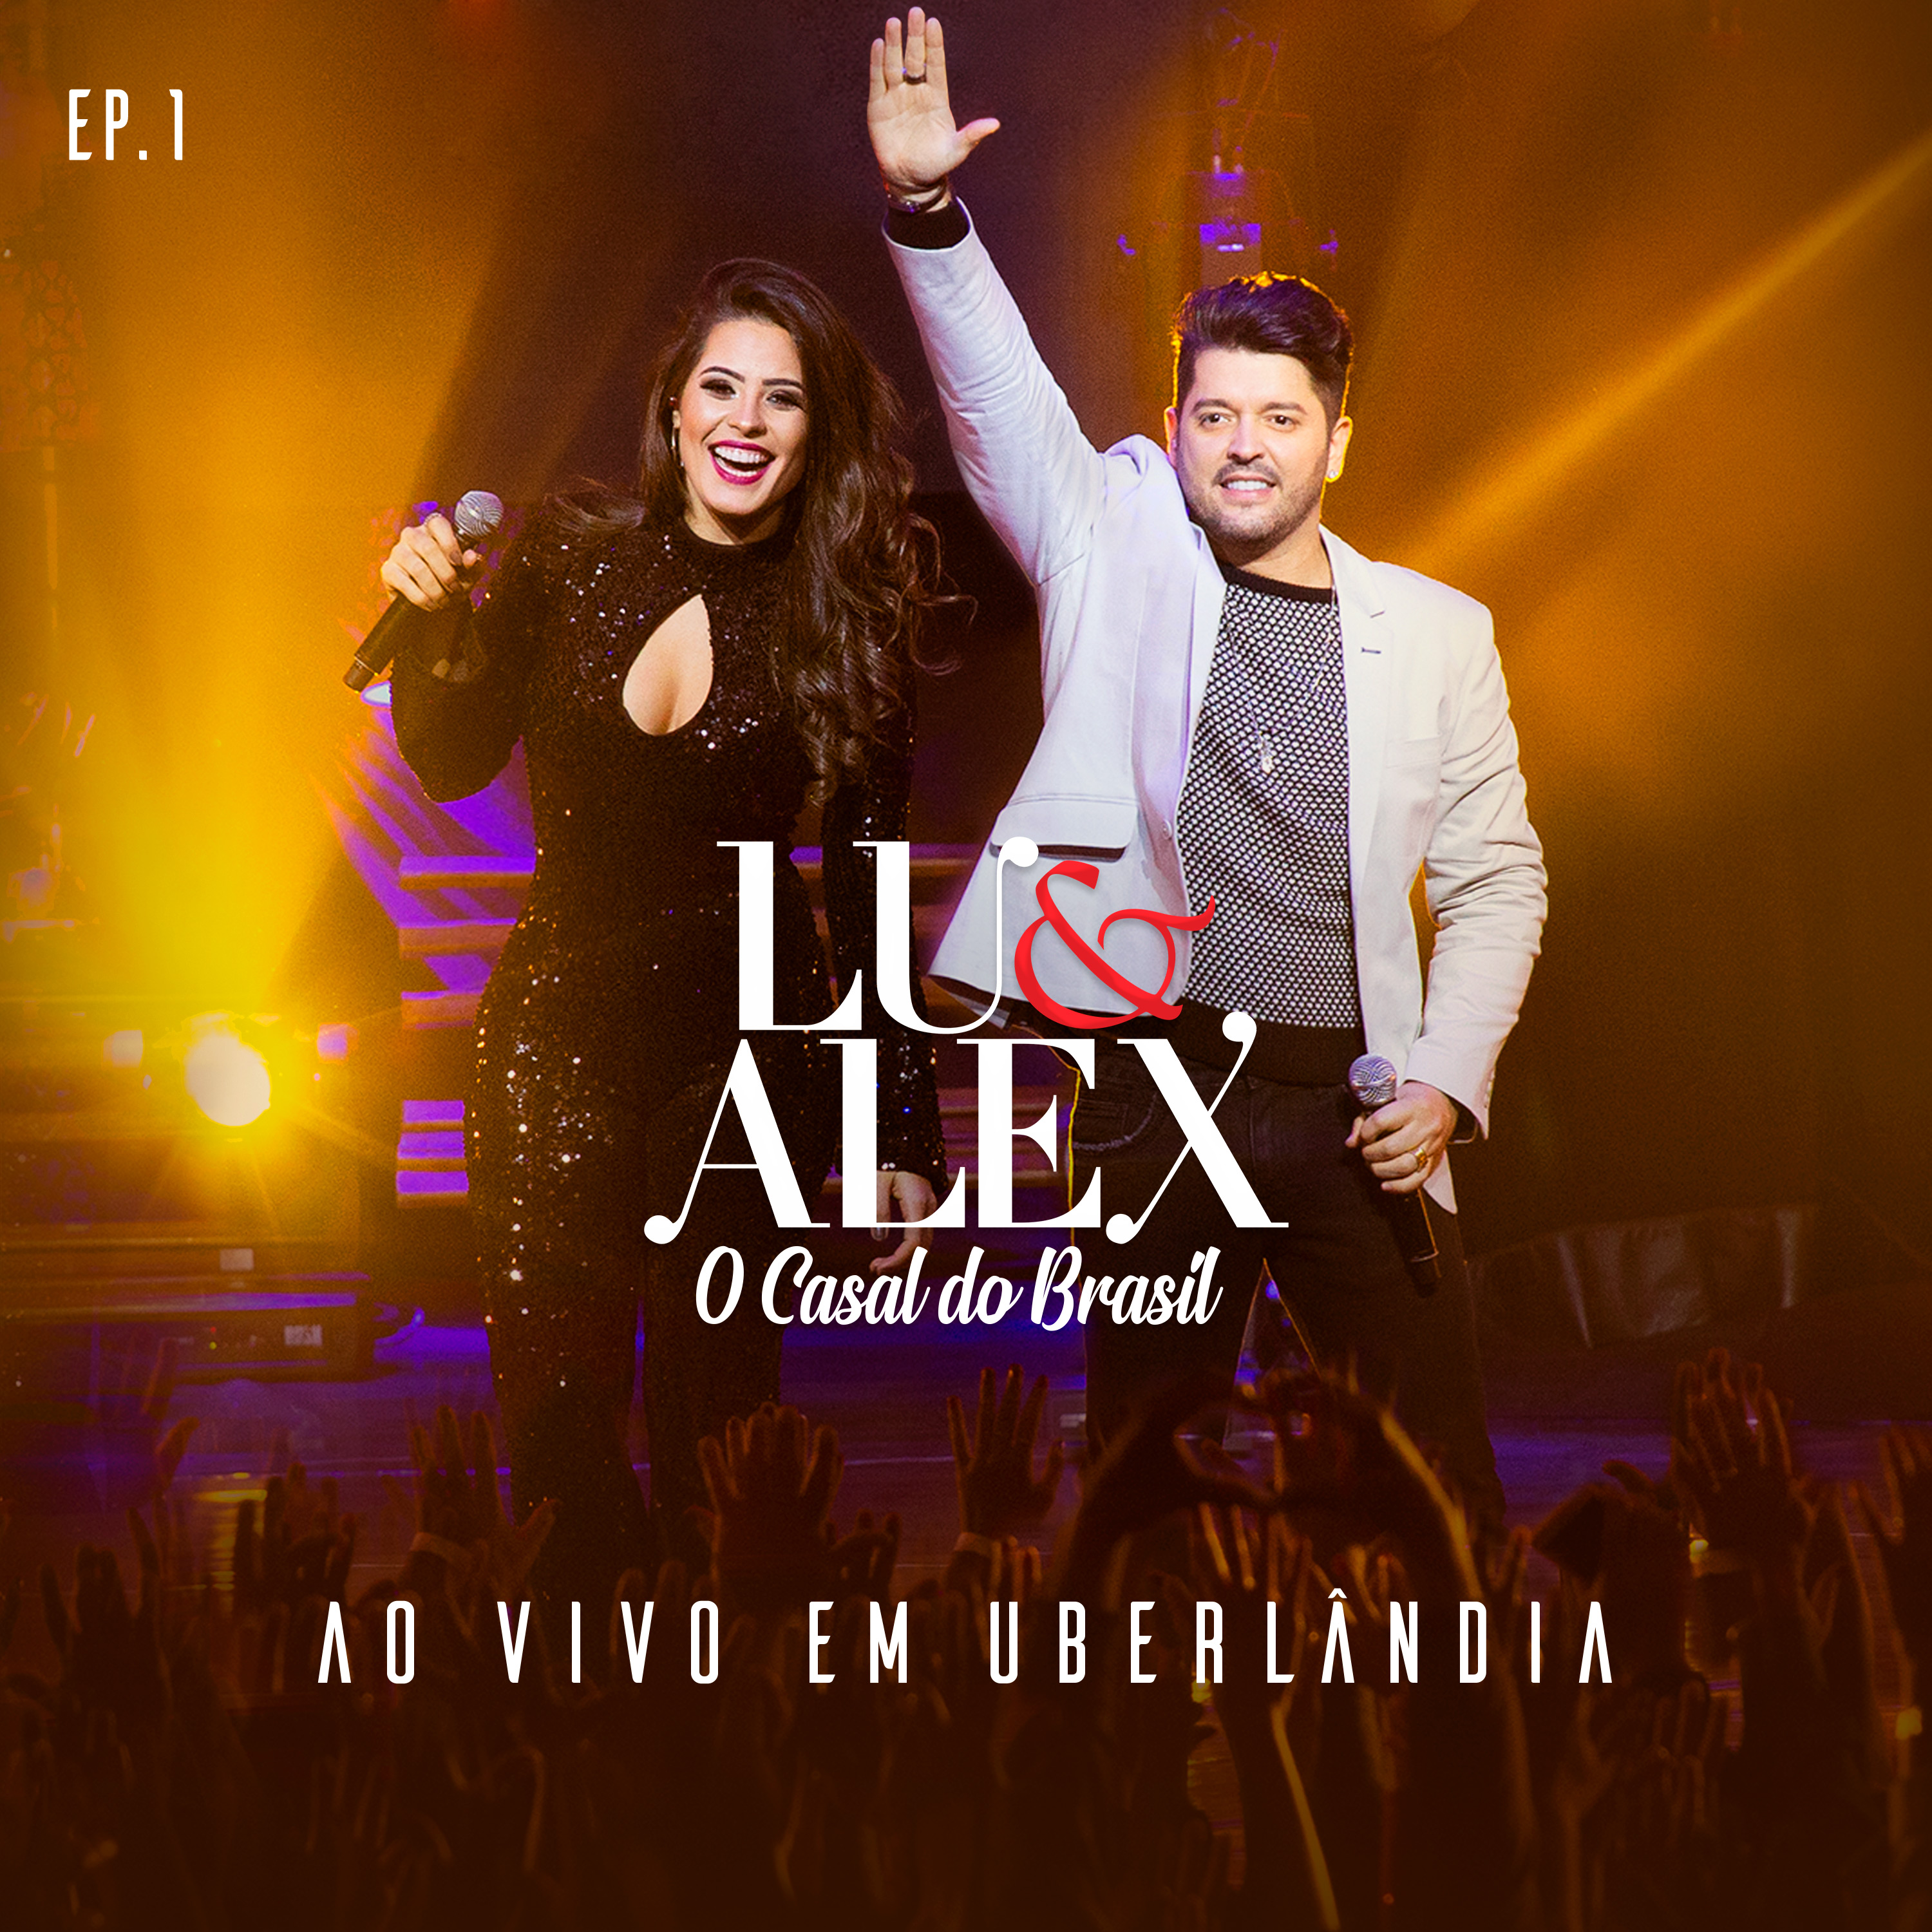 Lu & Alex lançam EP1 do DVD “Ao Vivo em Uberlândia” 41